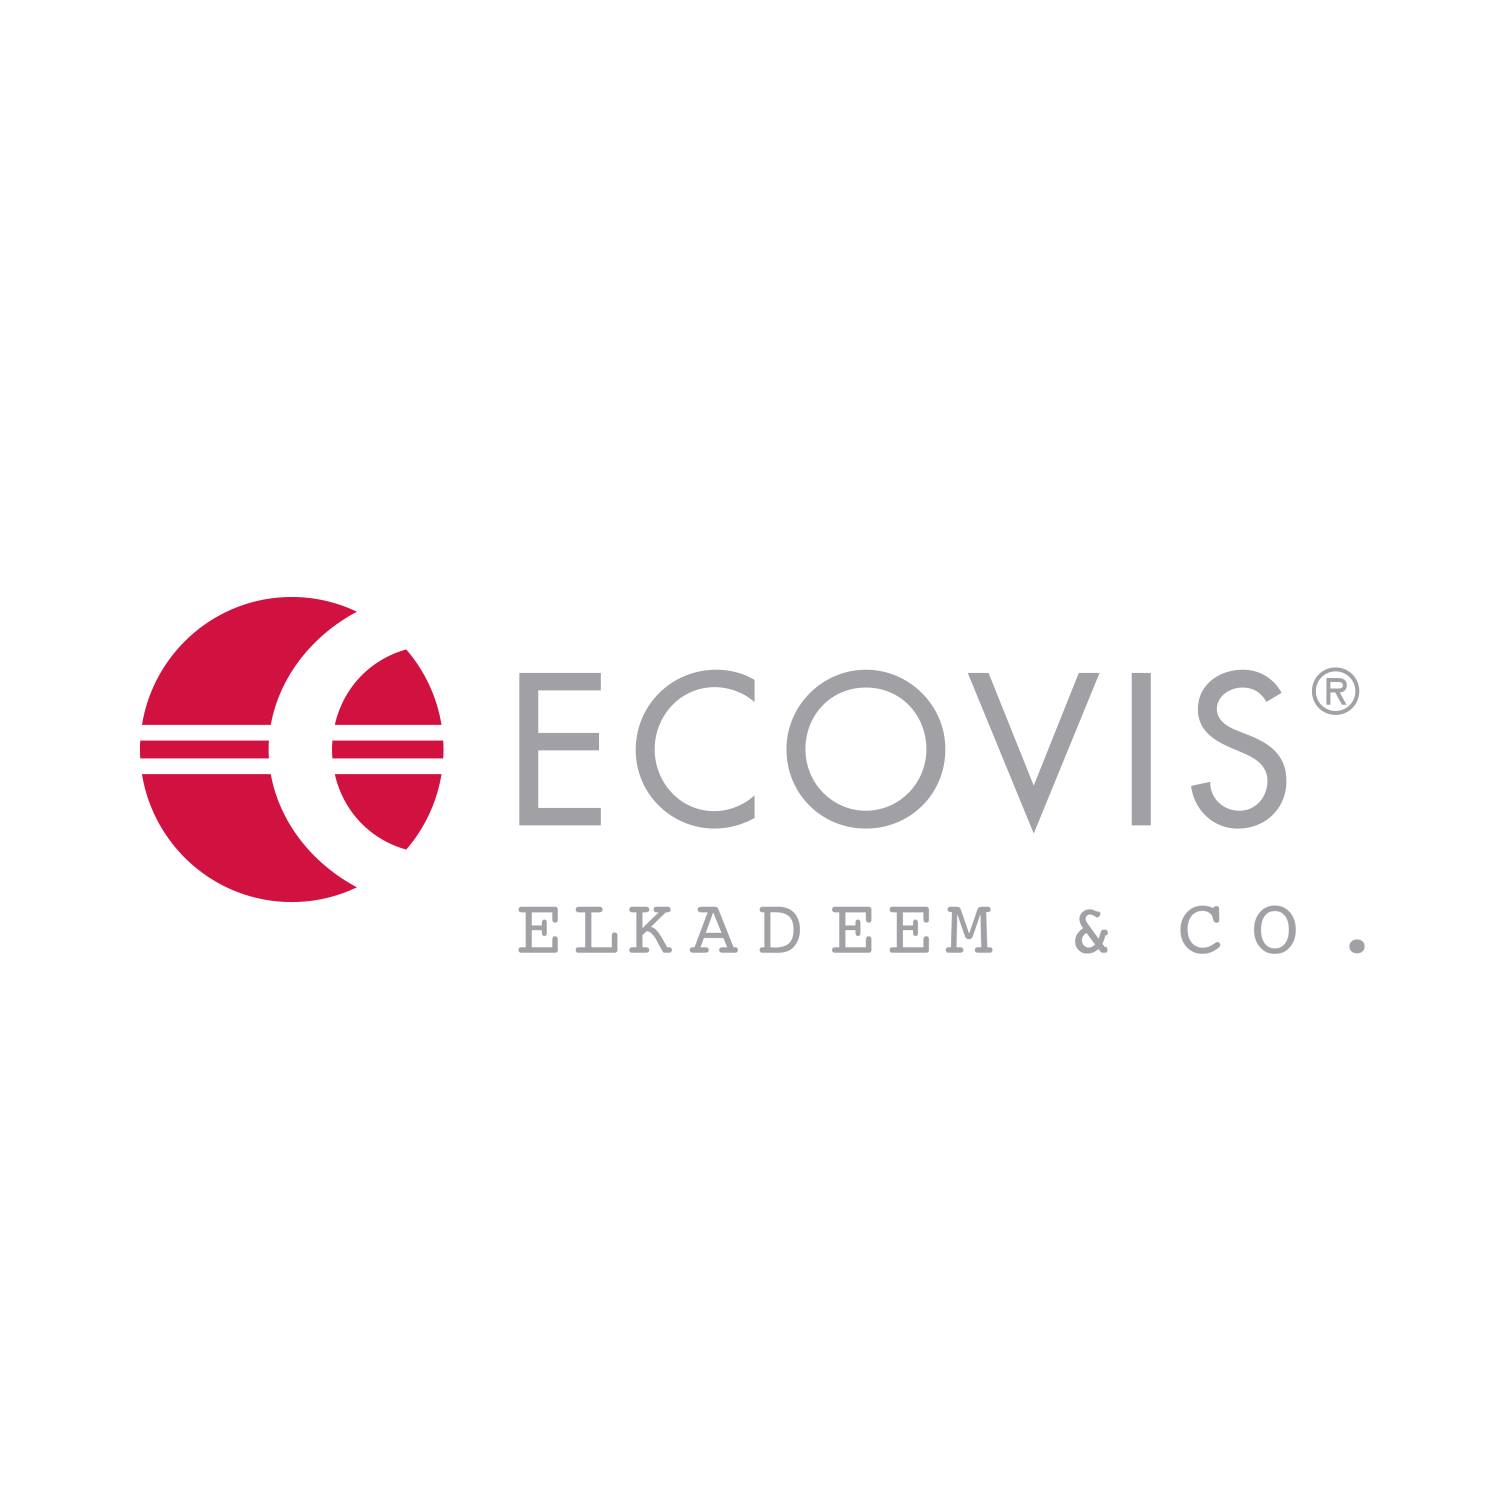 Ecovis ElKadeem